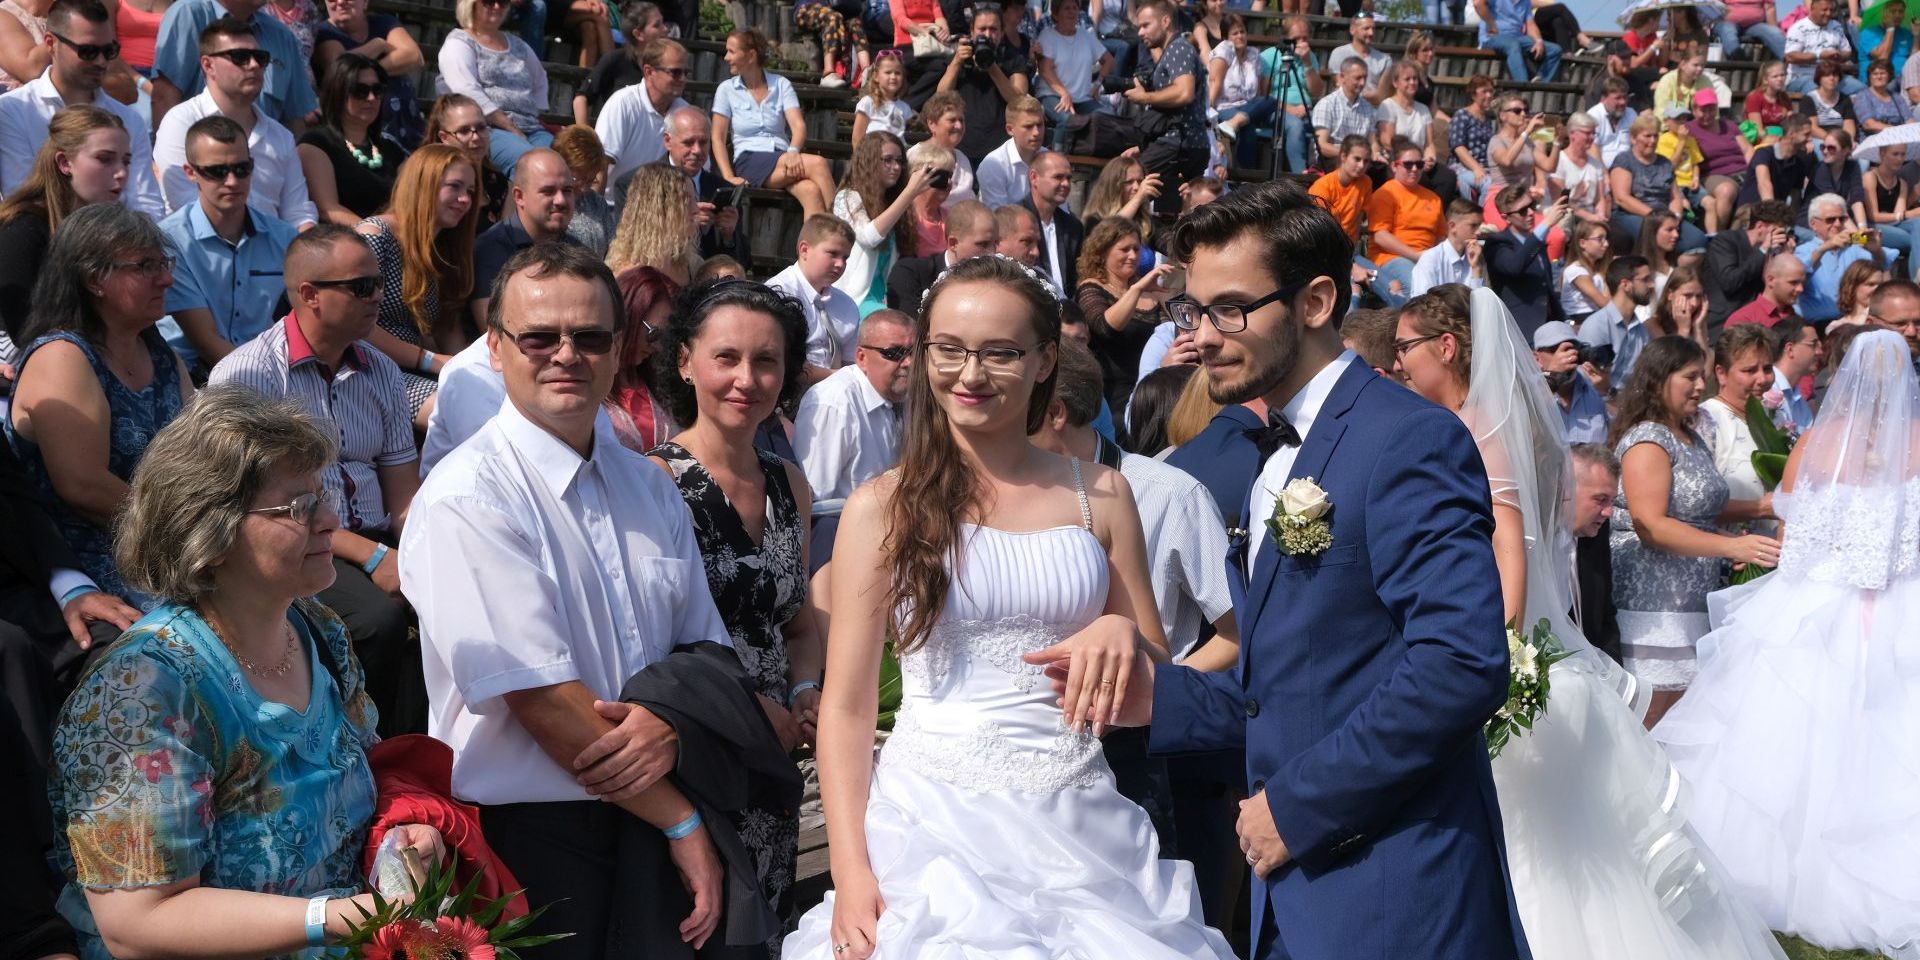 Esküvő több ezres násznéppel – pályázat